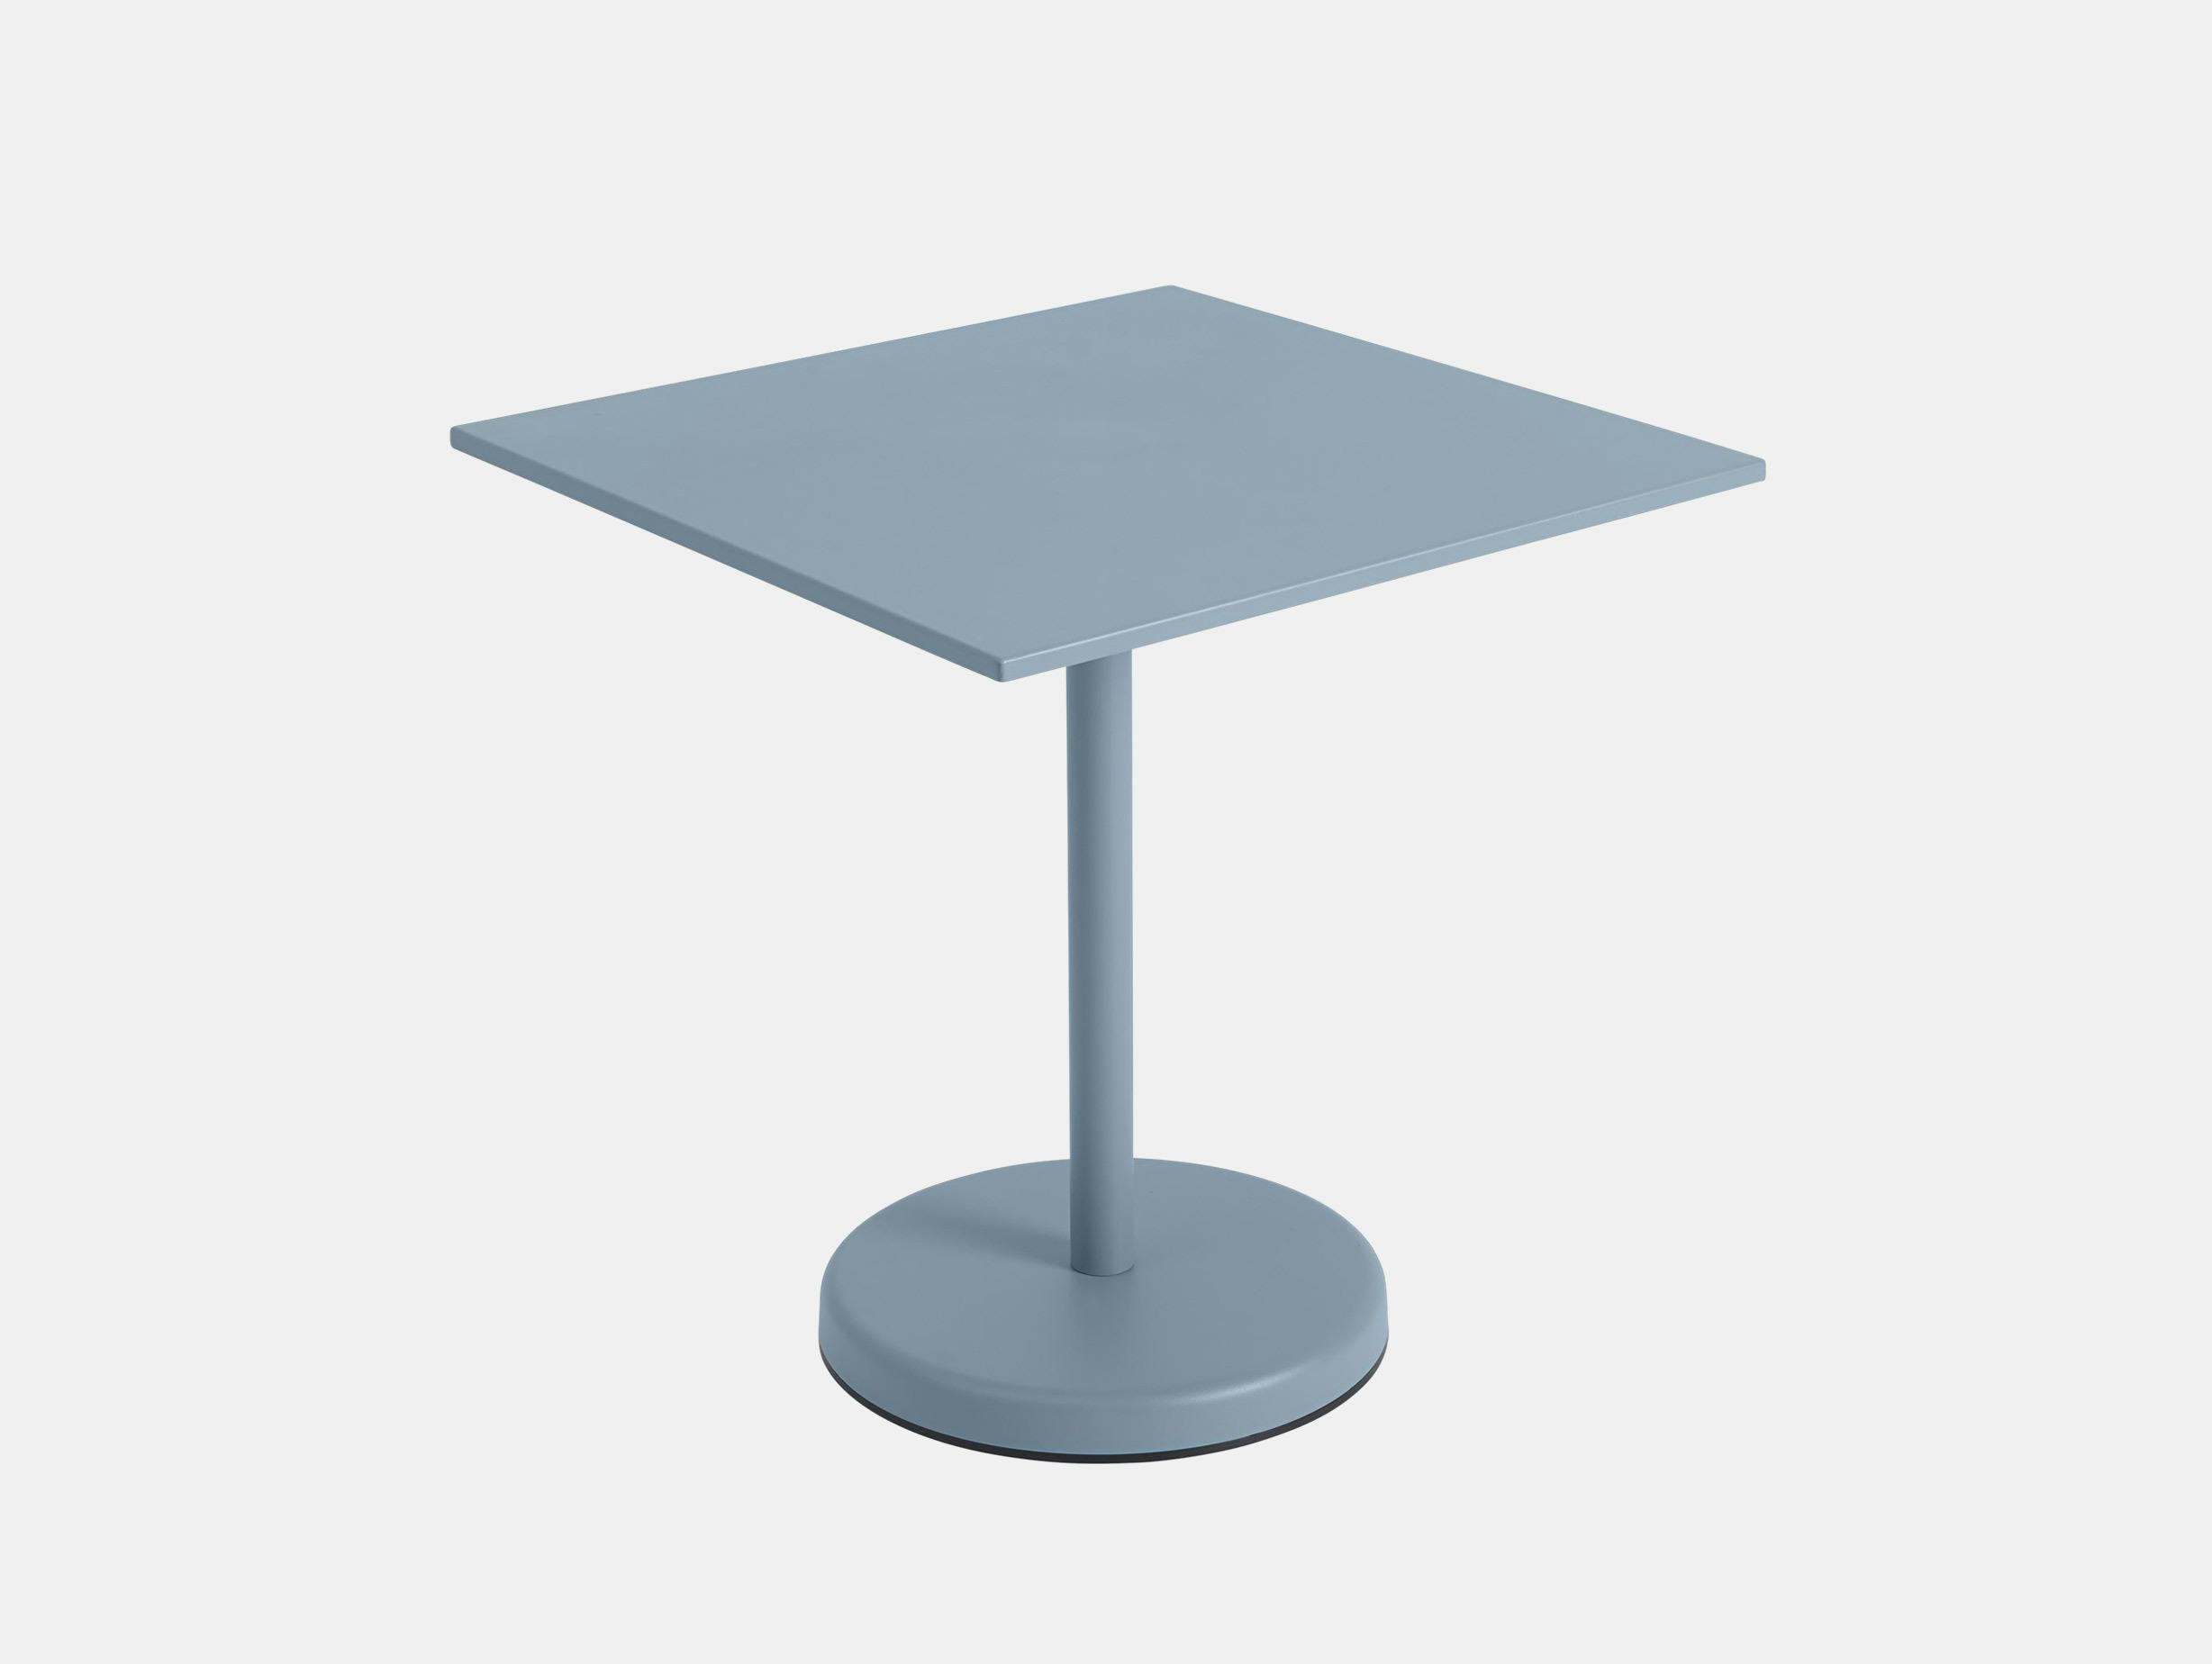 Muuto thomas bentzen linear steel cafe table pale blue